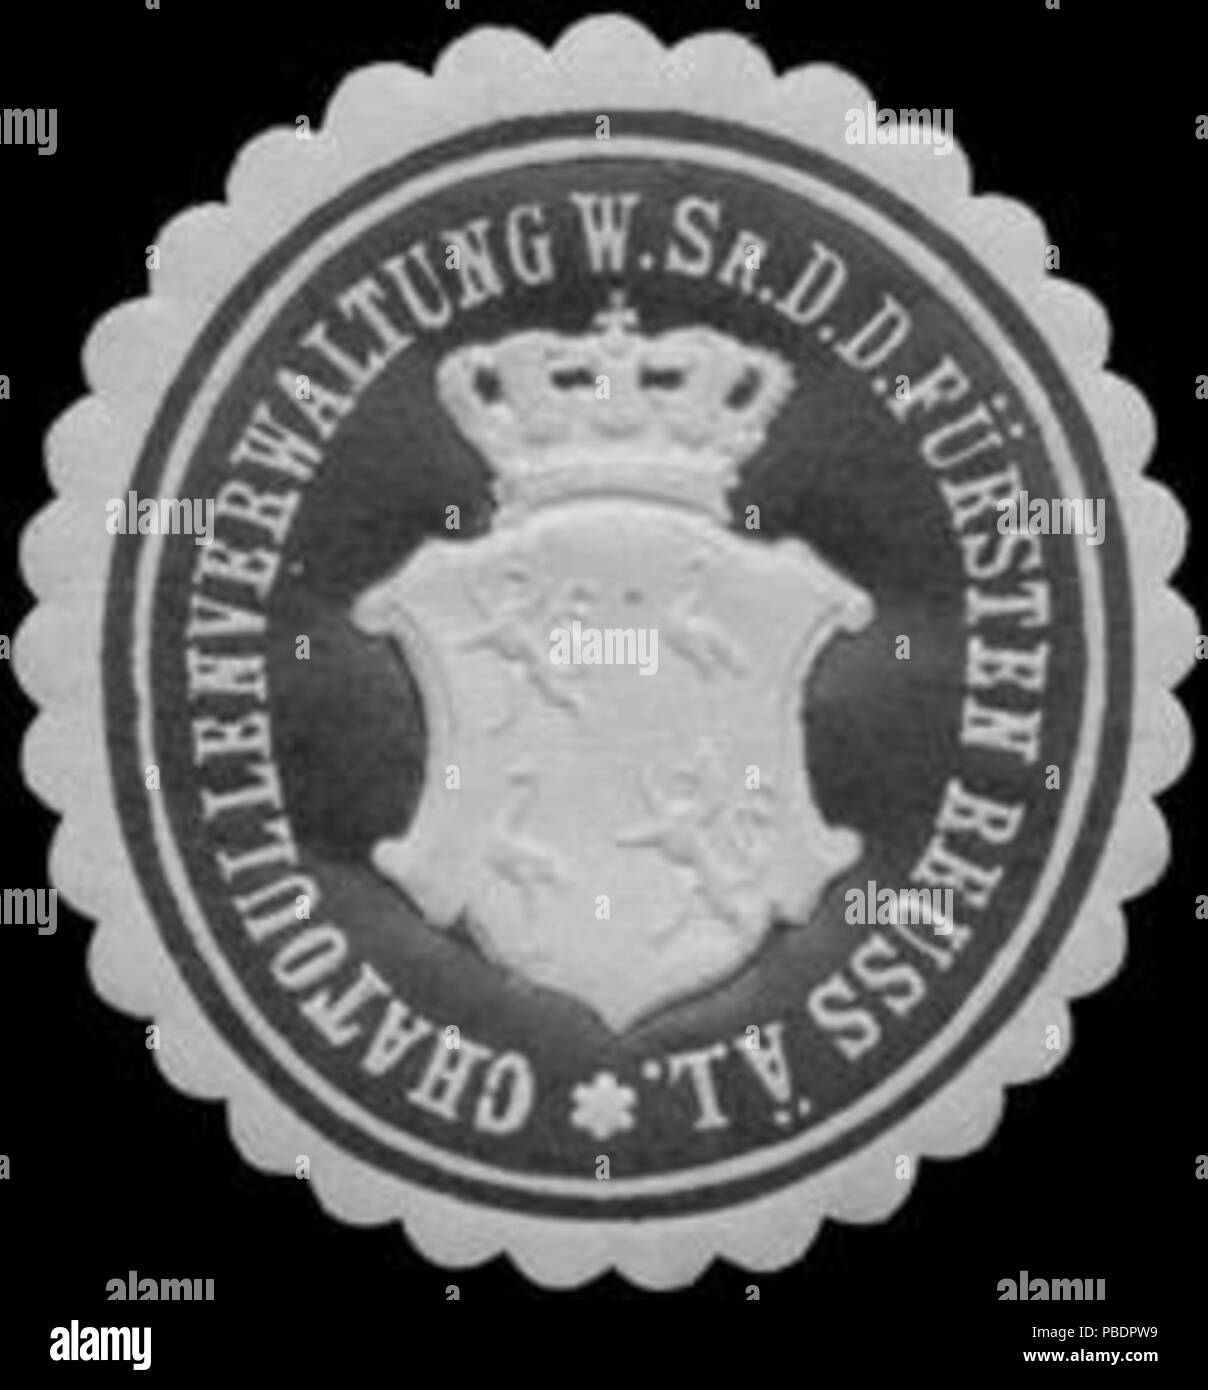 Alte Briefverschlussmarke aus Papier, welche seit ca. 1850 von Behoerden, Anwaelten, Notaren und Firmen zum verschliessen der Post verwendet wurde. 1333 Siegelmarke Chatoullenverwaltung w. Sr. D. des Fürsten Reuss ä. L. W0323049 Stock Photo